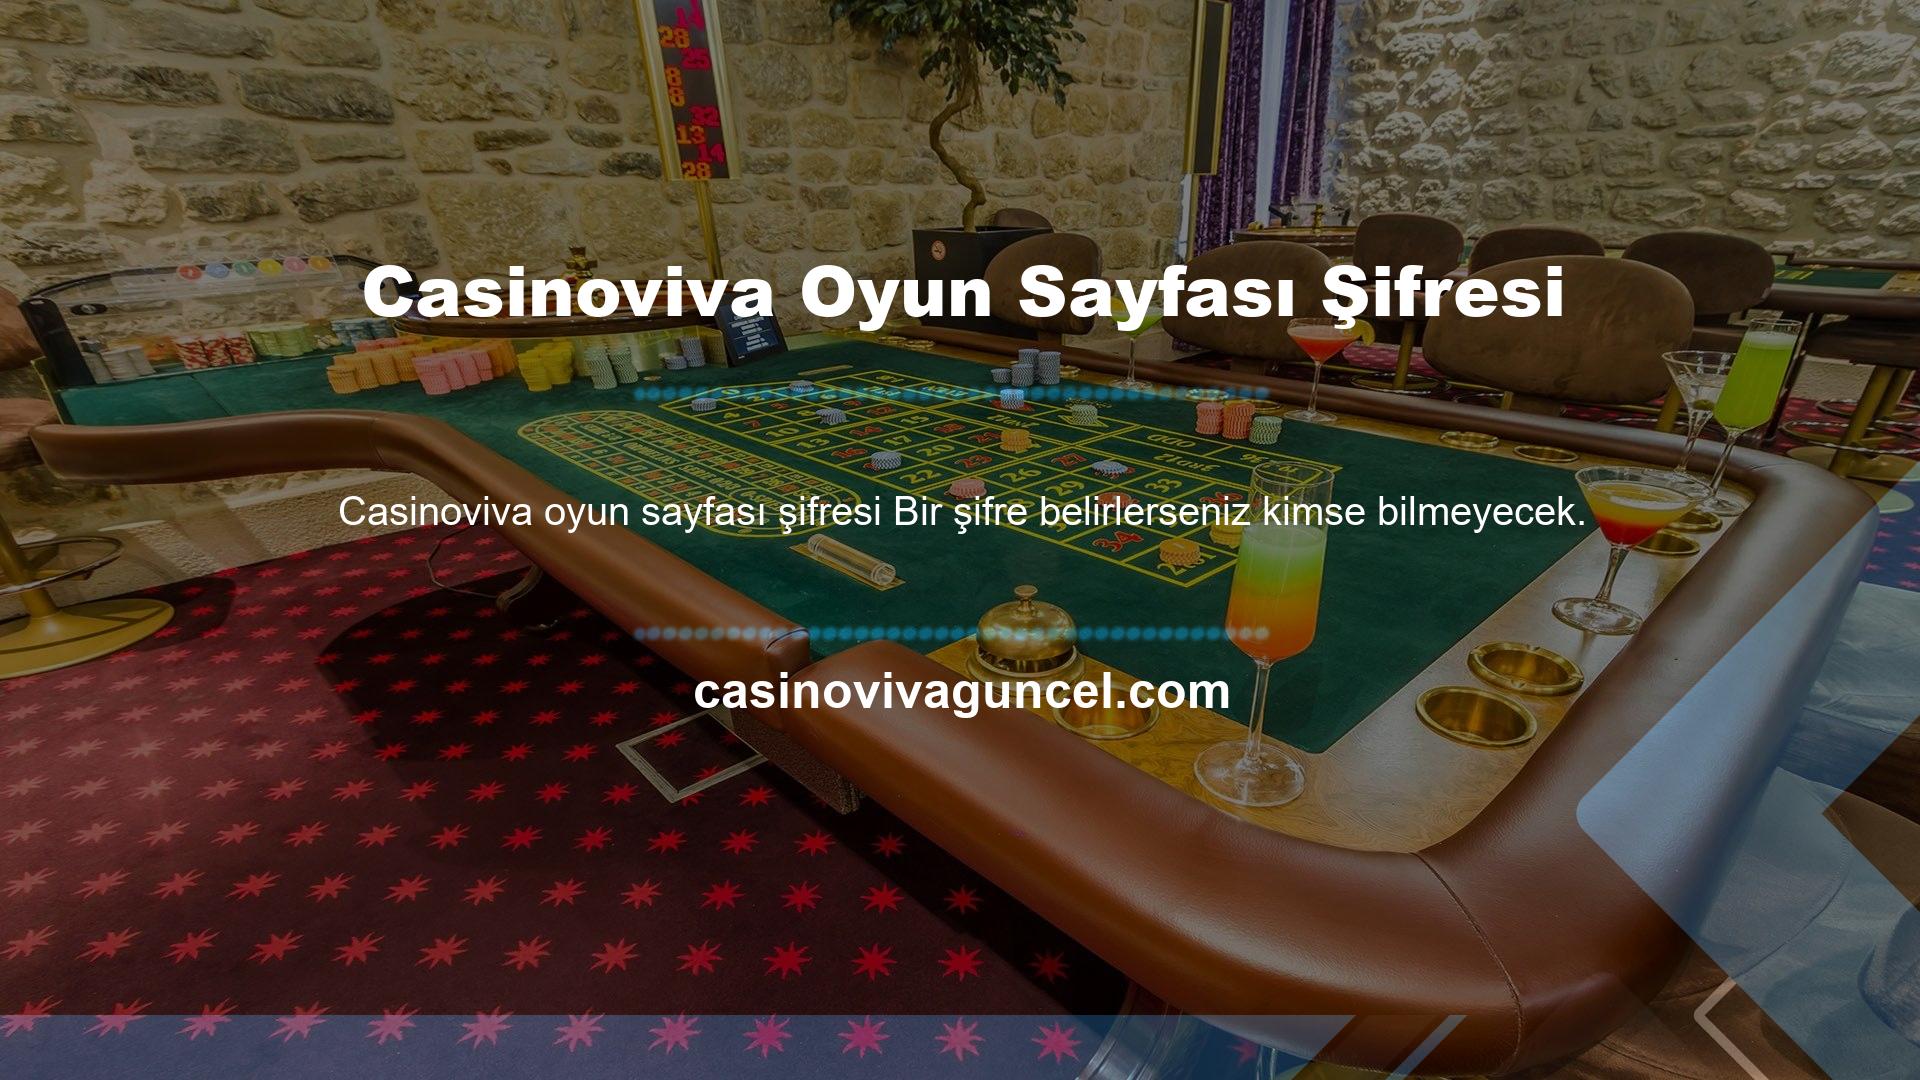 Casinoviva Oyun Sayfası Şifresi